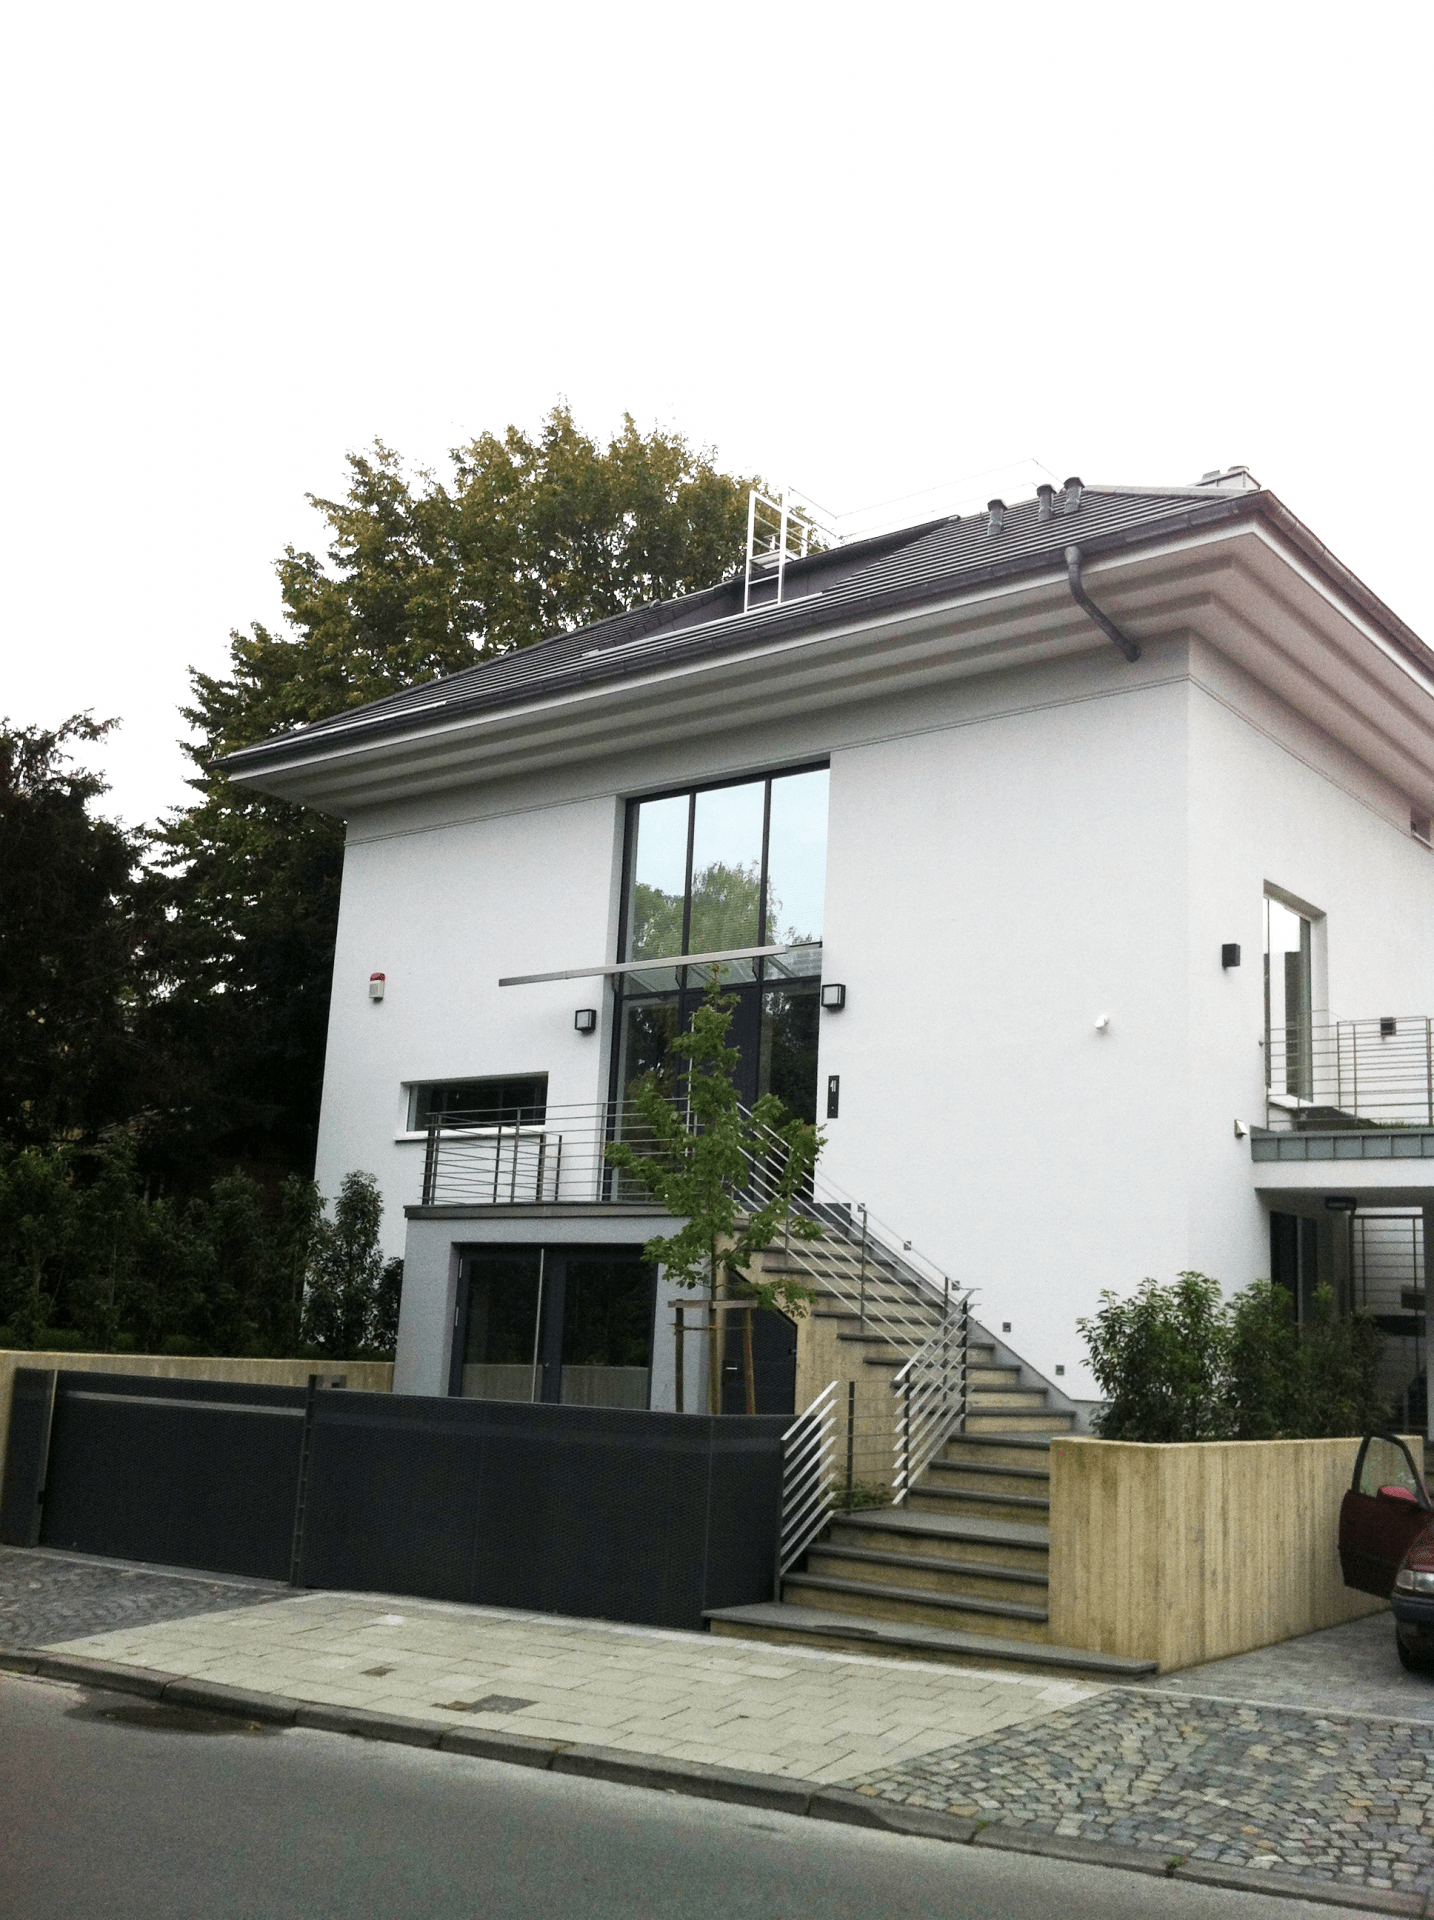 Single family house Aachen